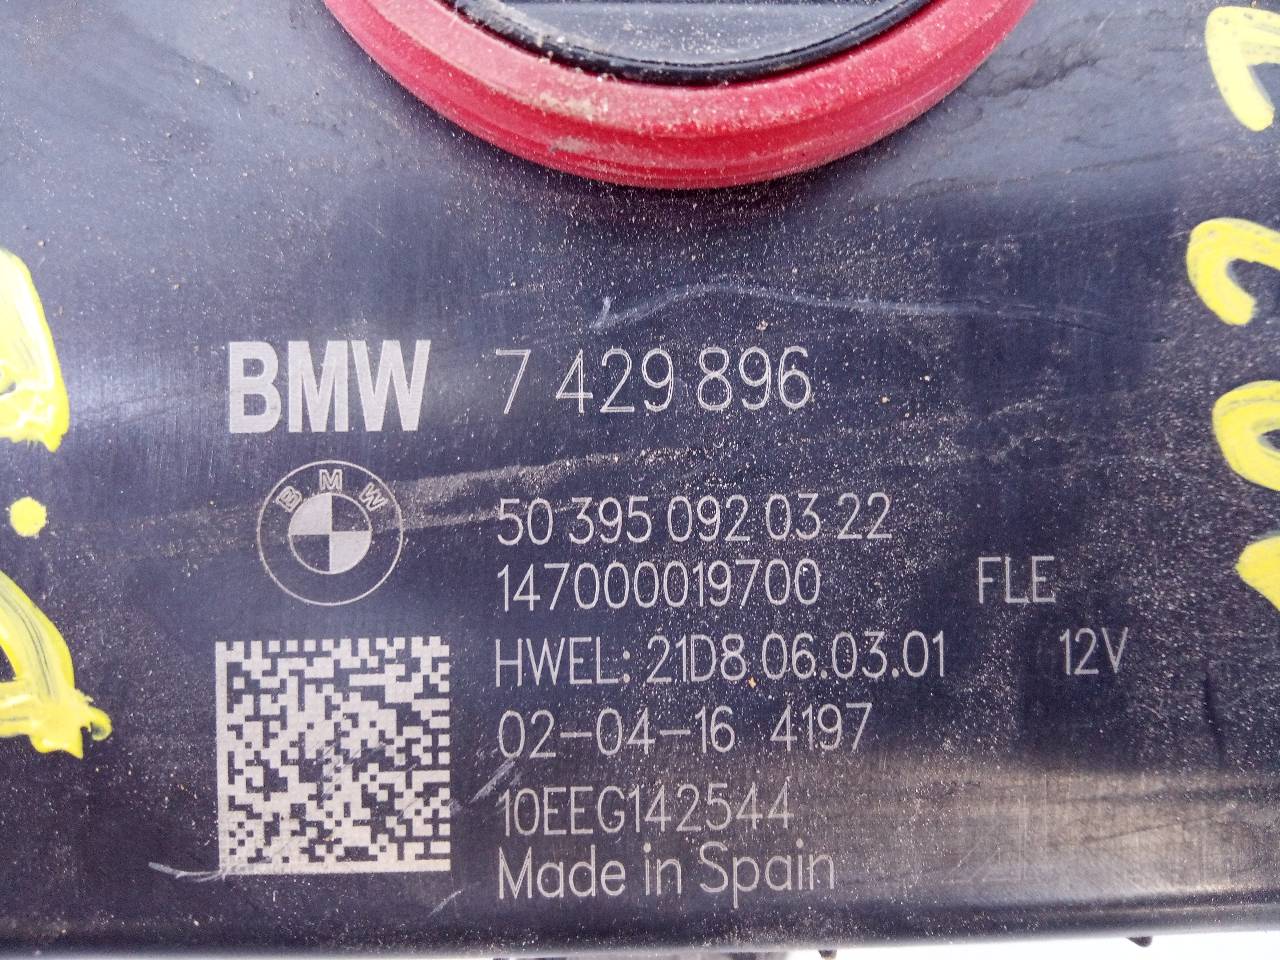 BMW X1 F48/F49 (2015-2023) Ksenona bloks 7429896, 503950920322 25367698